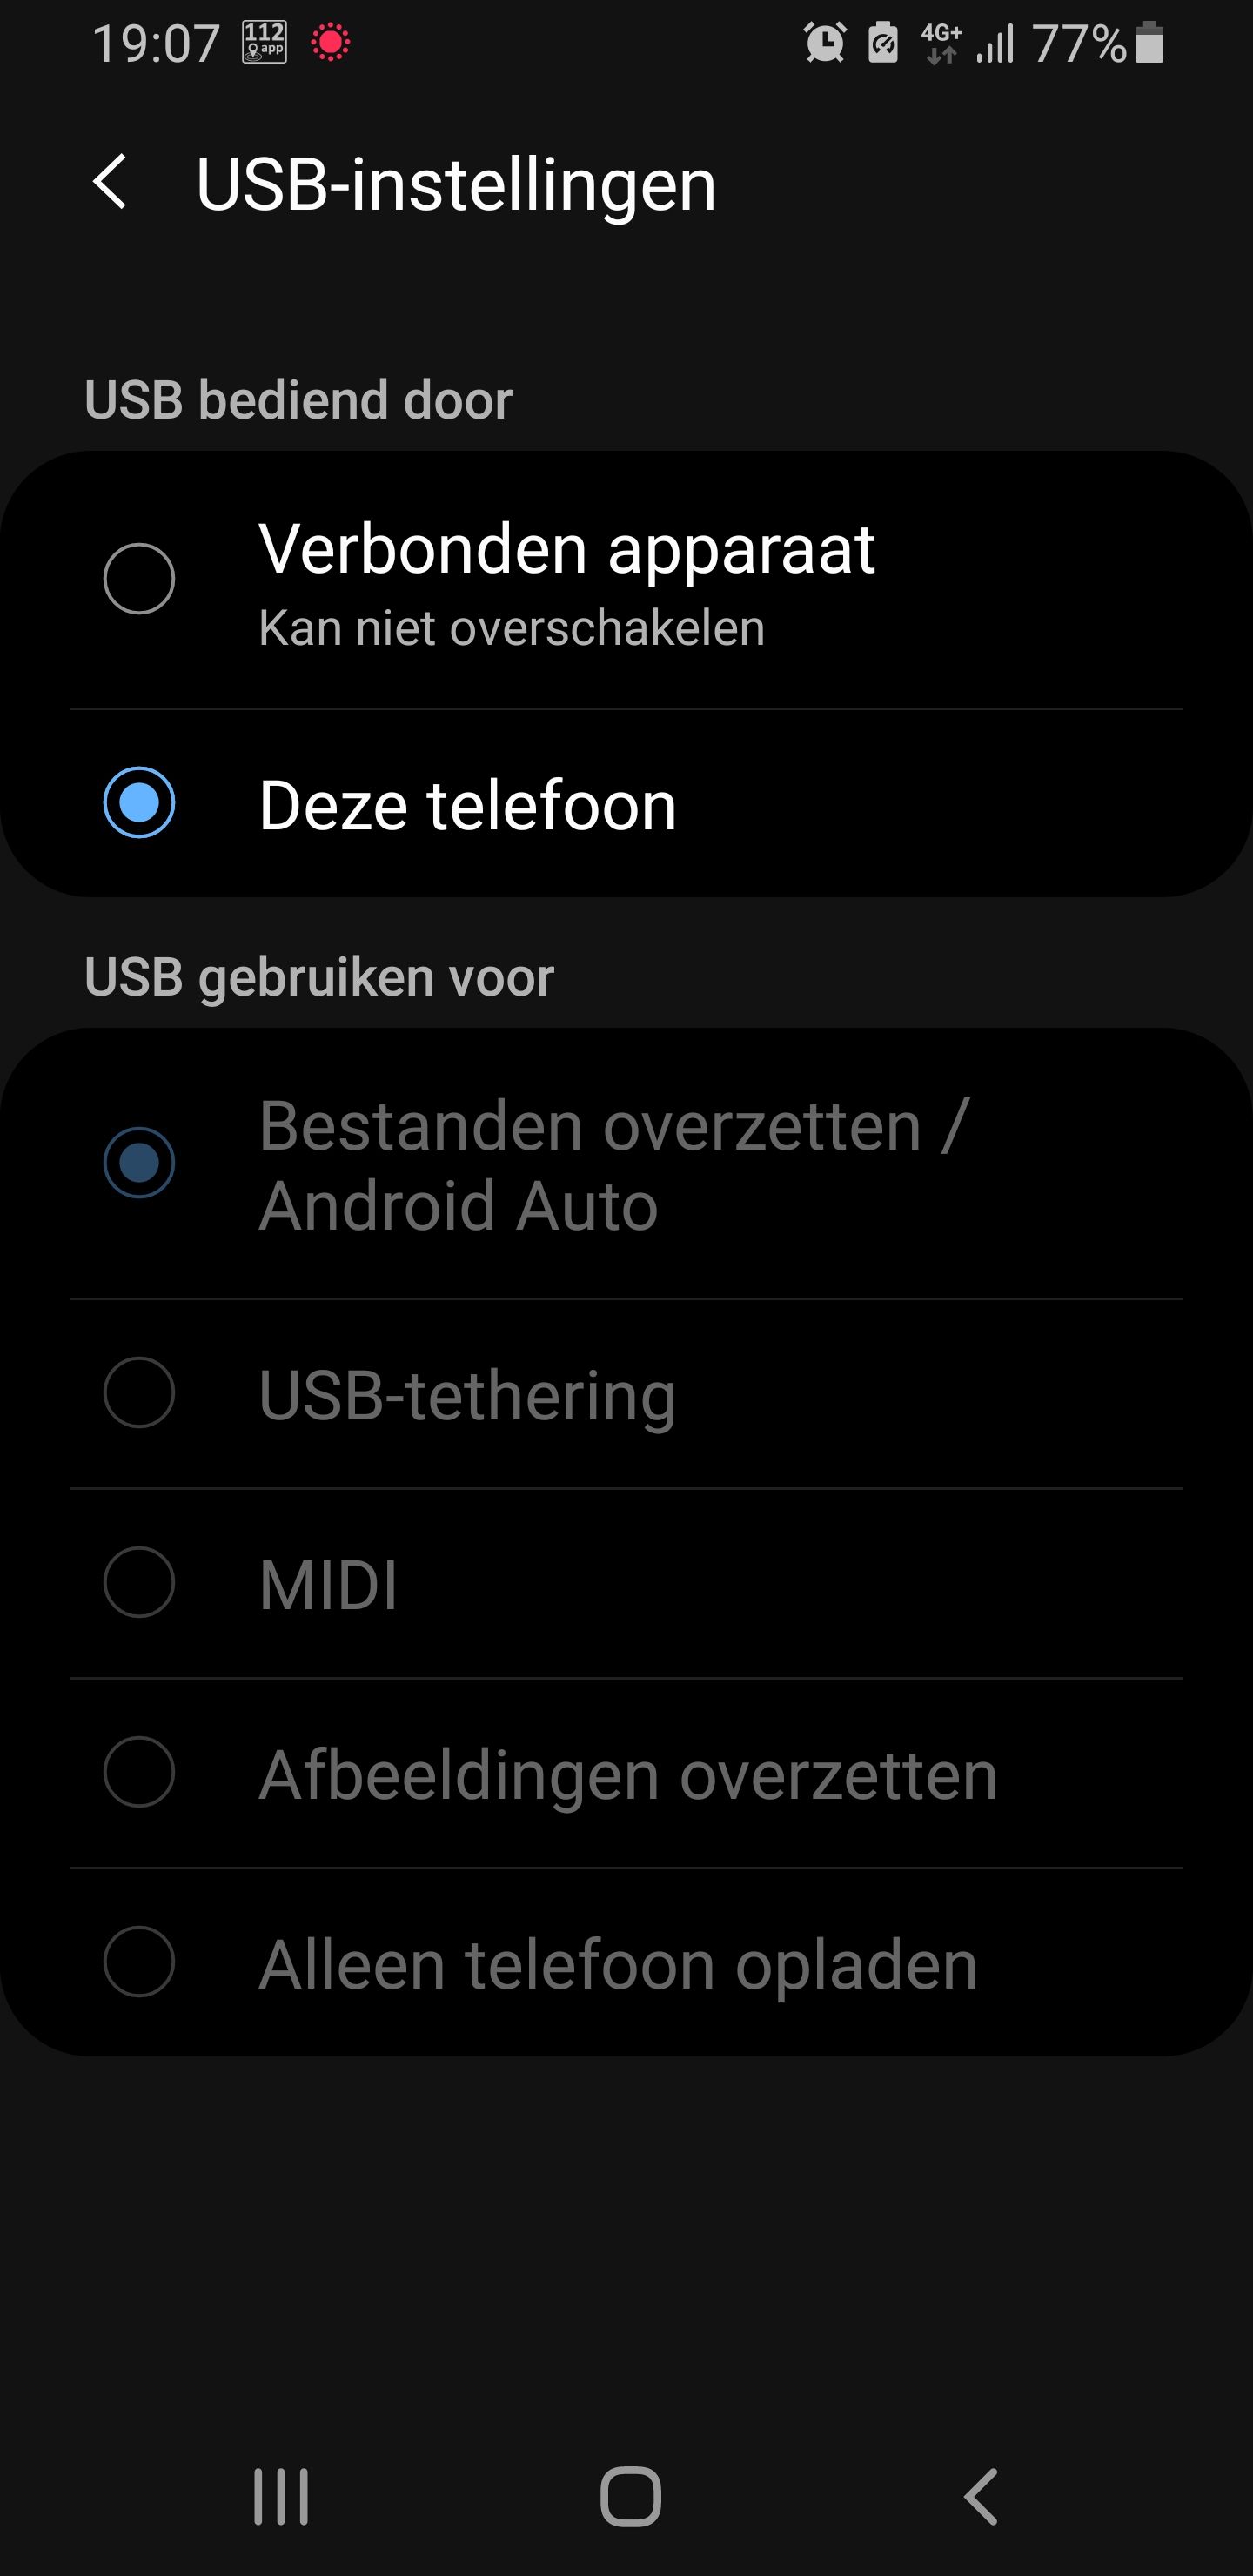 Mirrorlink werkt niet meer (op S9 en S10) na Samsung Android 10 update -  Samsung Community